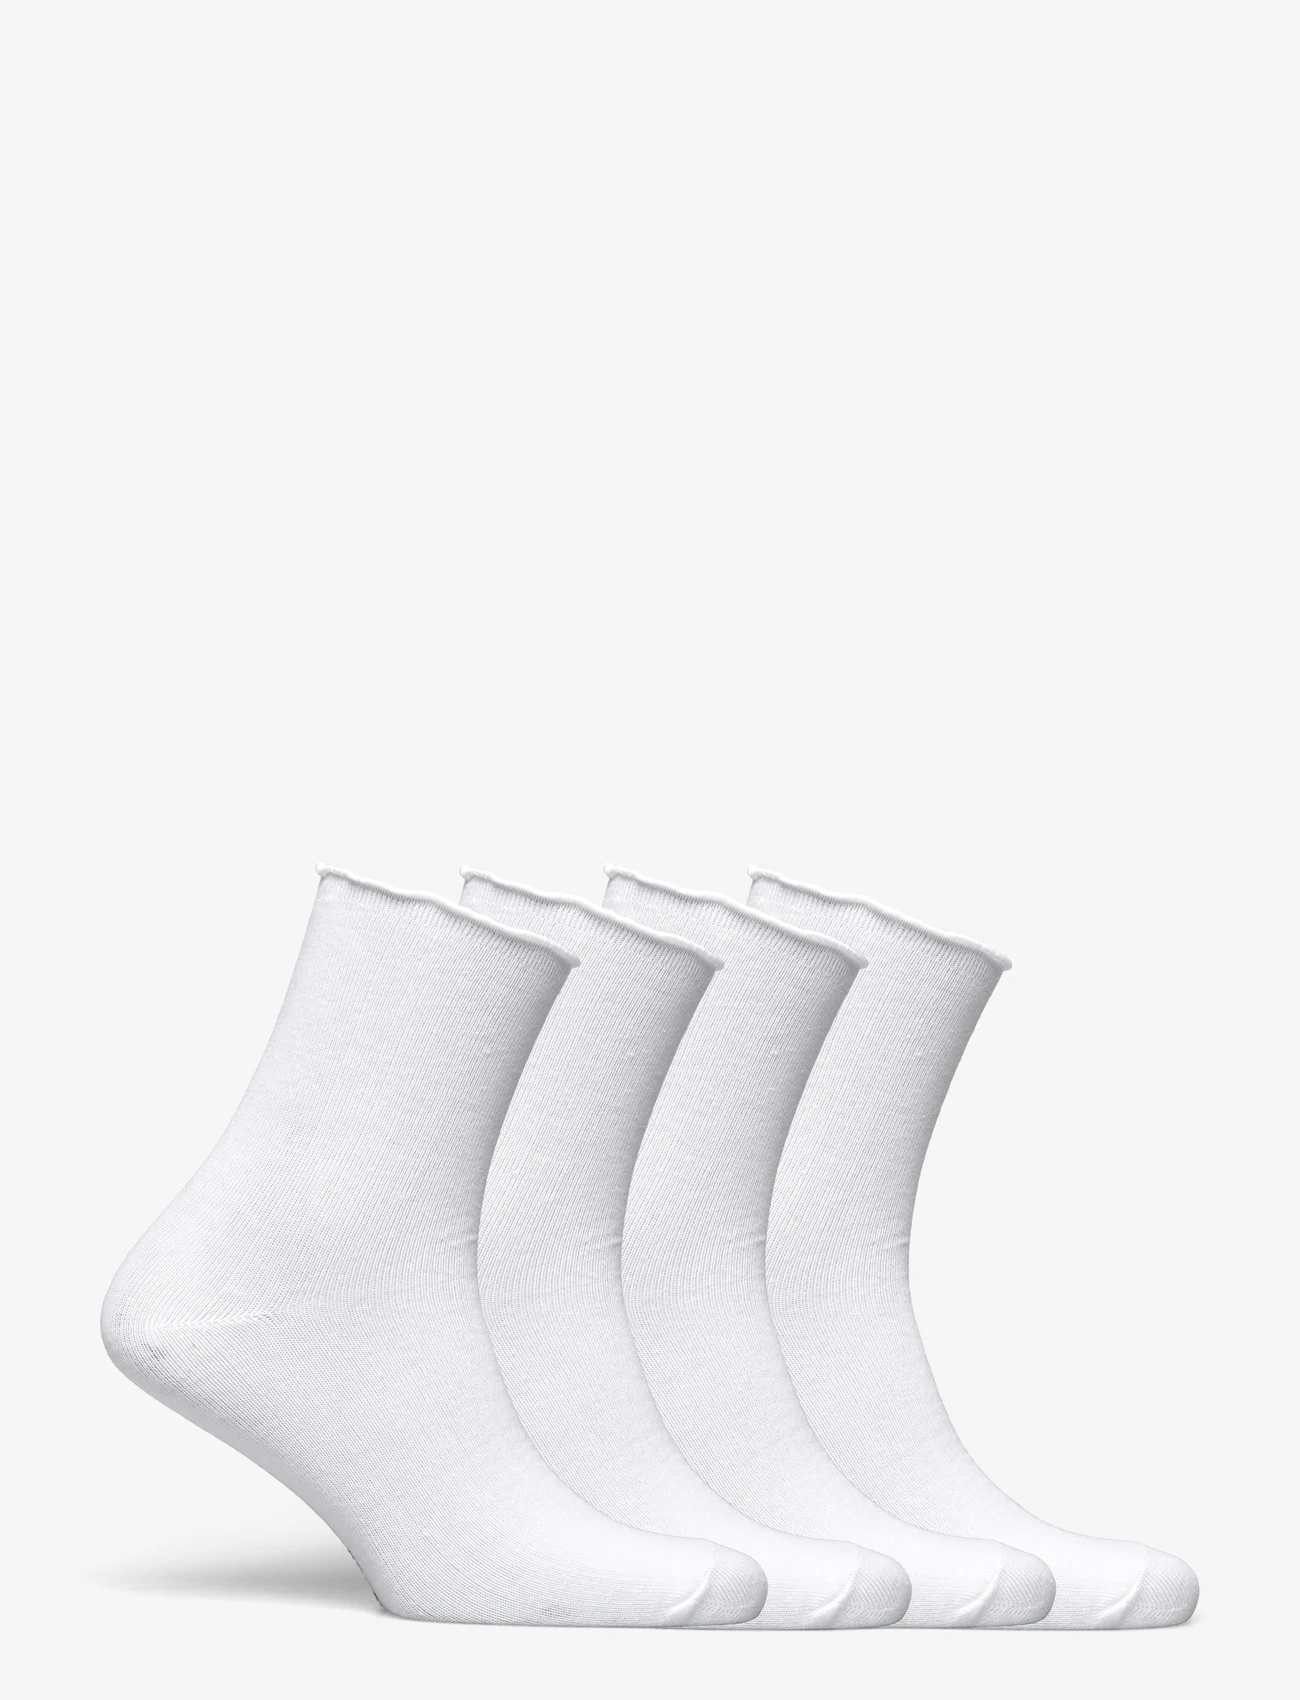 Rosemunde - RHAtlanta socks - 4-pack - lowest prices - new white - 1